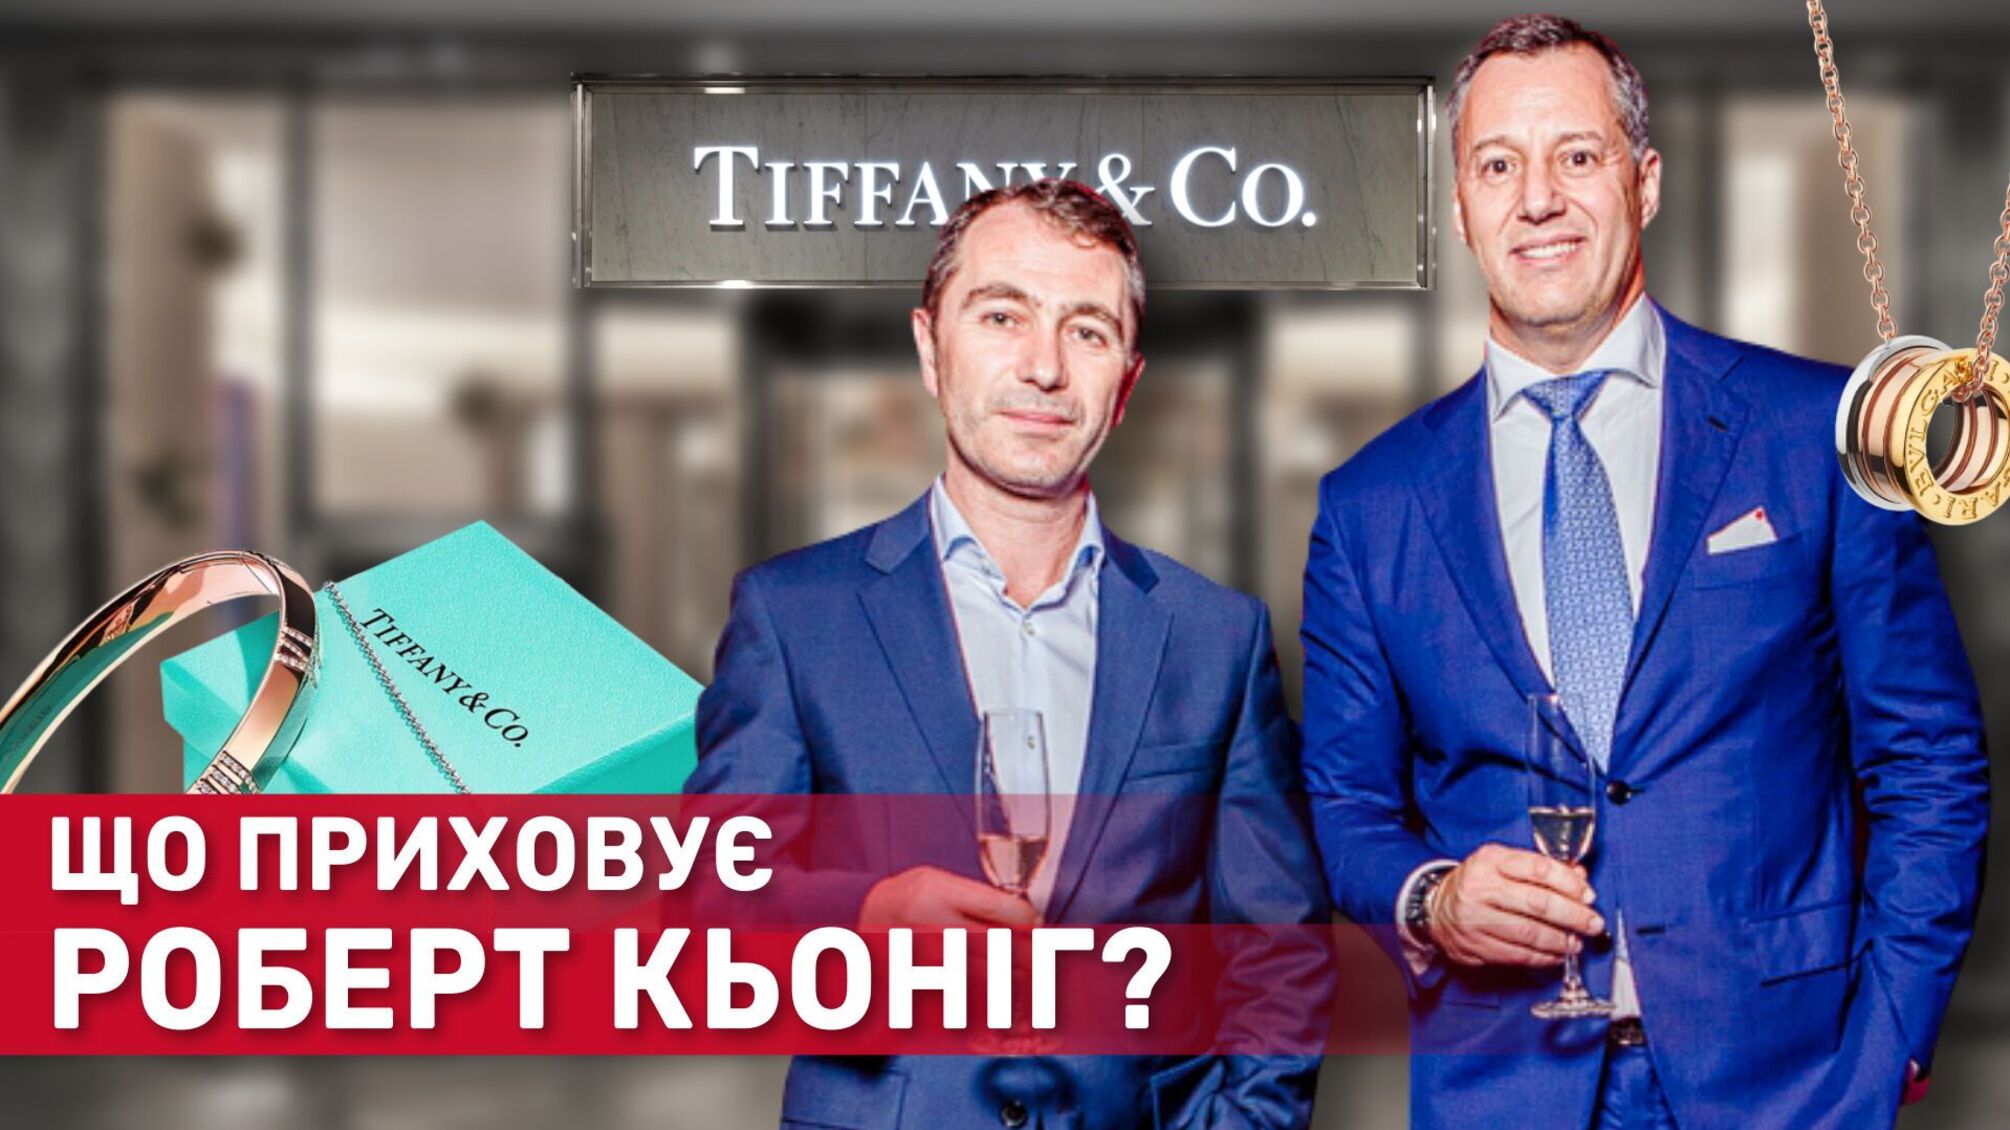 Бизнес с Деминским и связи с Кличко: что скрывает 'главный ювелир' Киева Кениг?